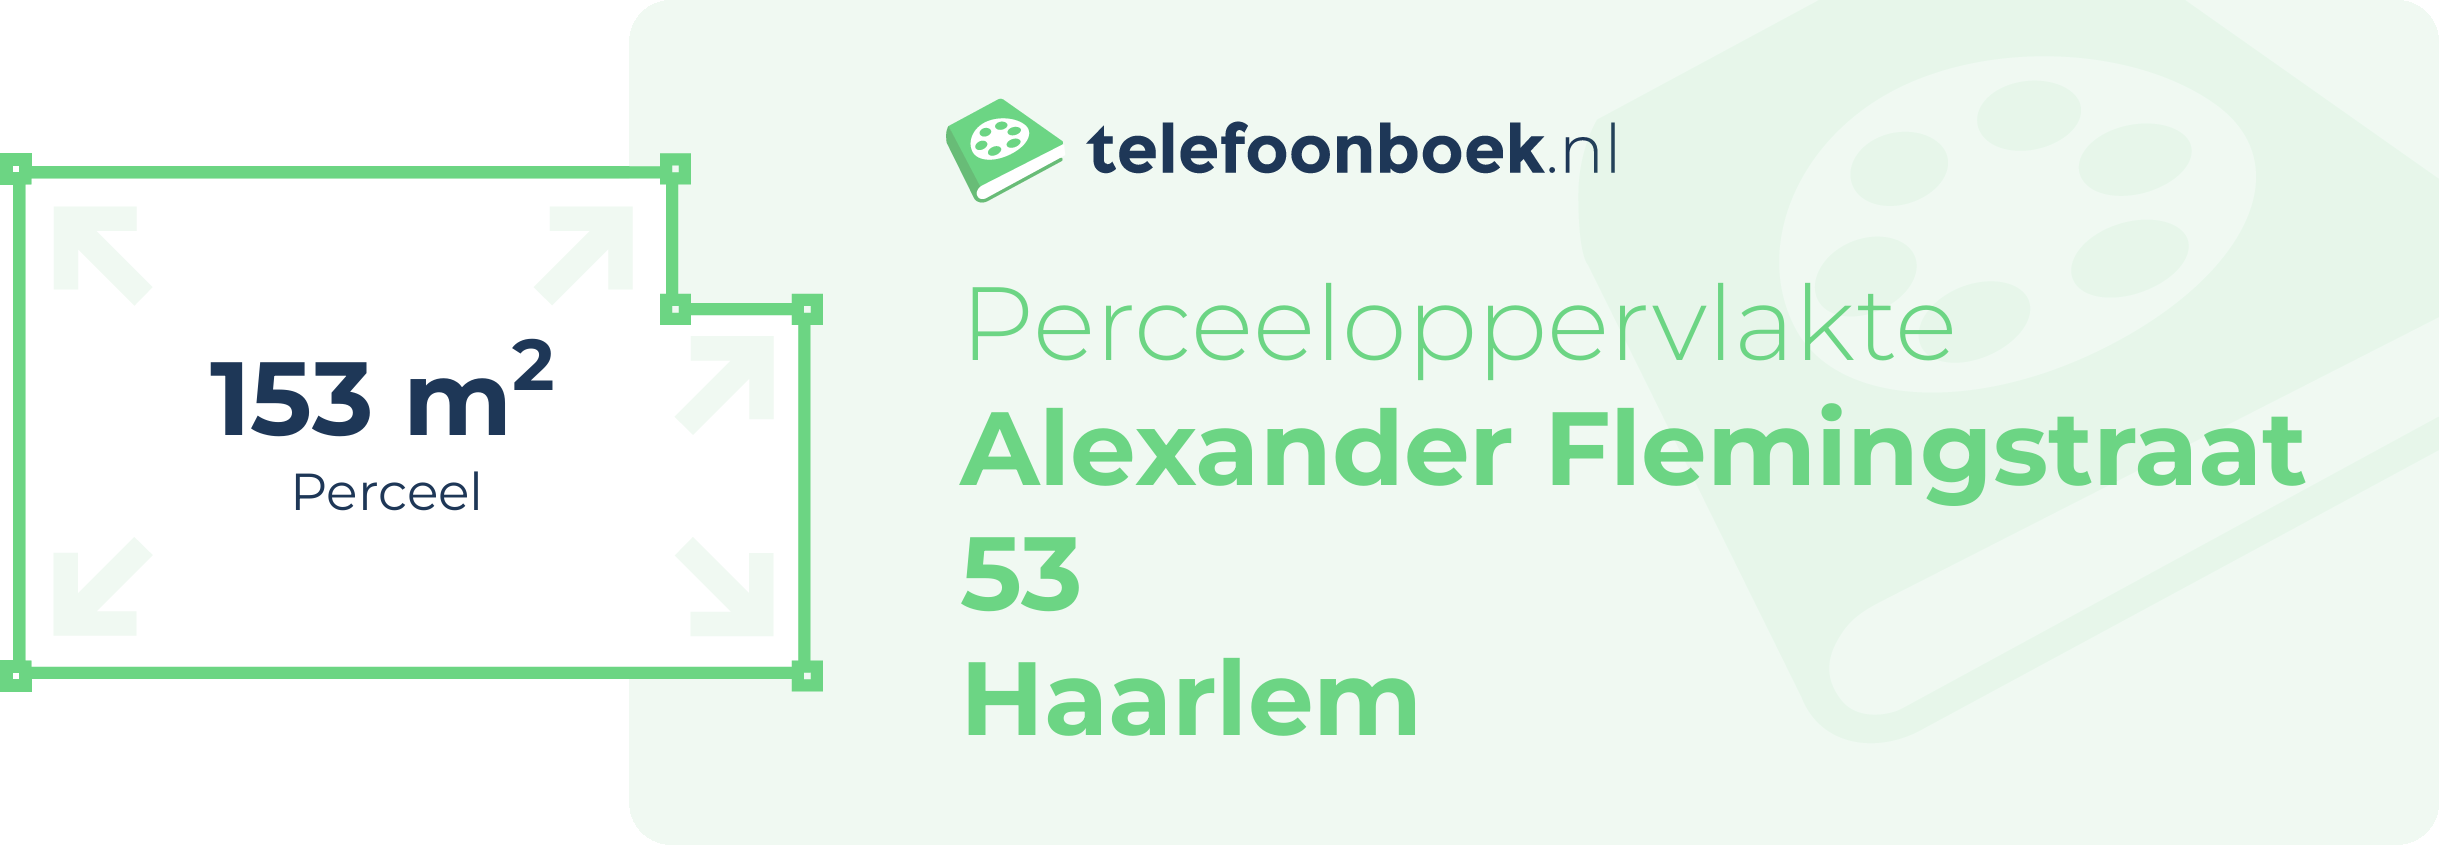 Perceeloppervlakte Alexander Flemingstraat 53 Haarlem